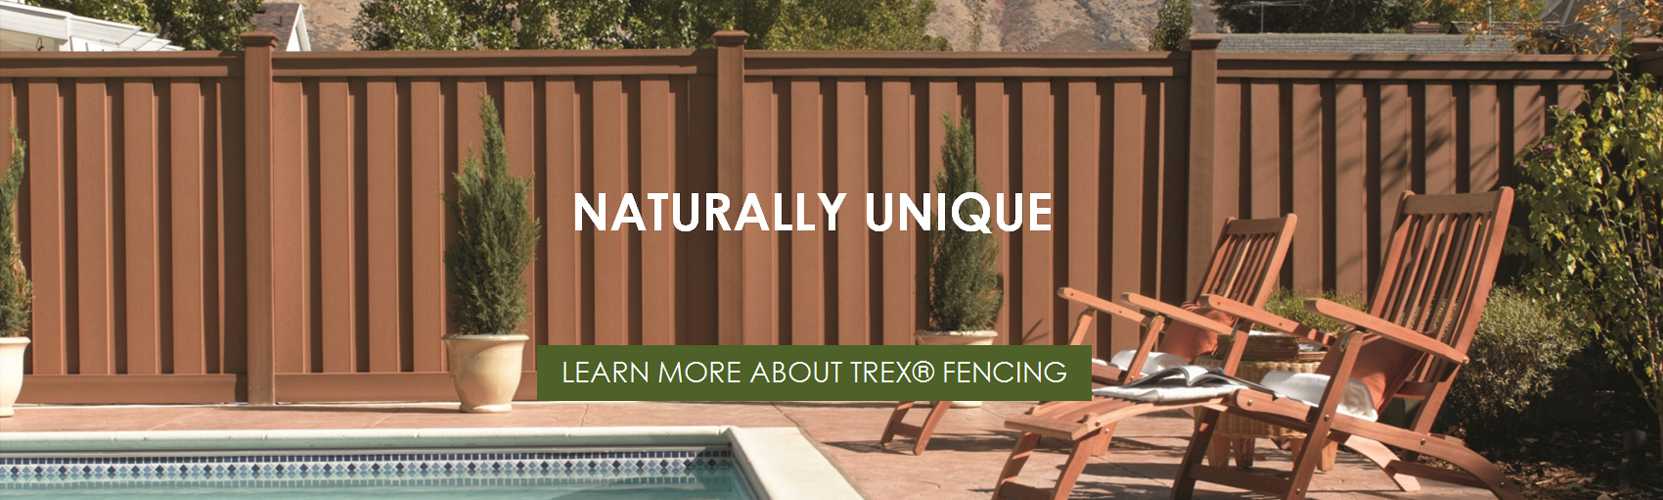 buy trex fencing online